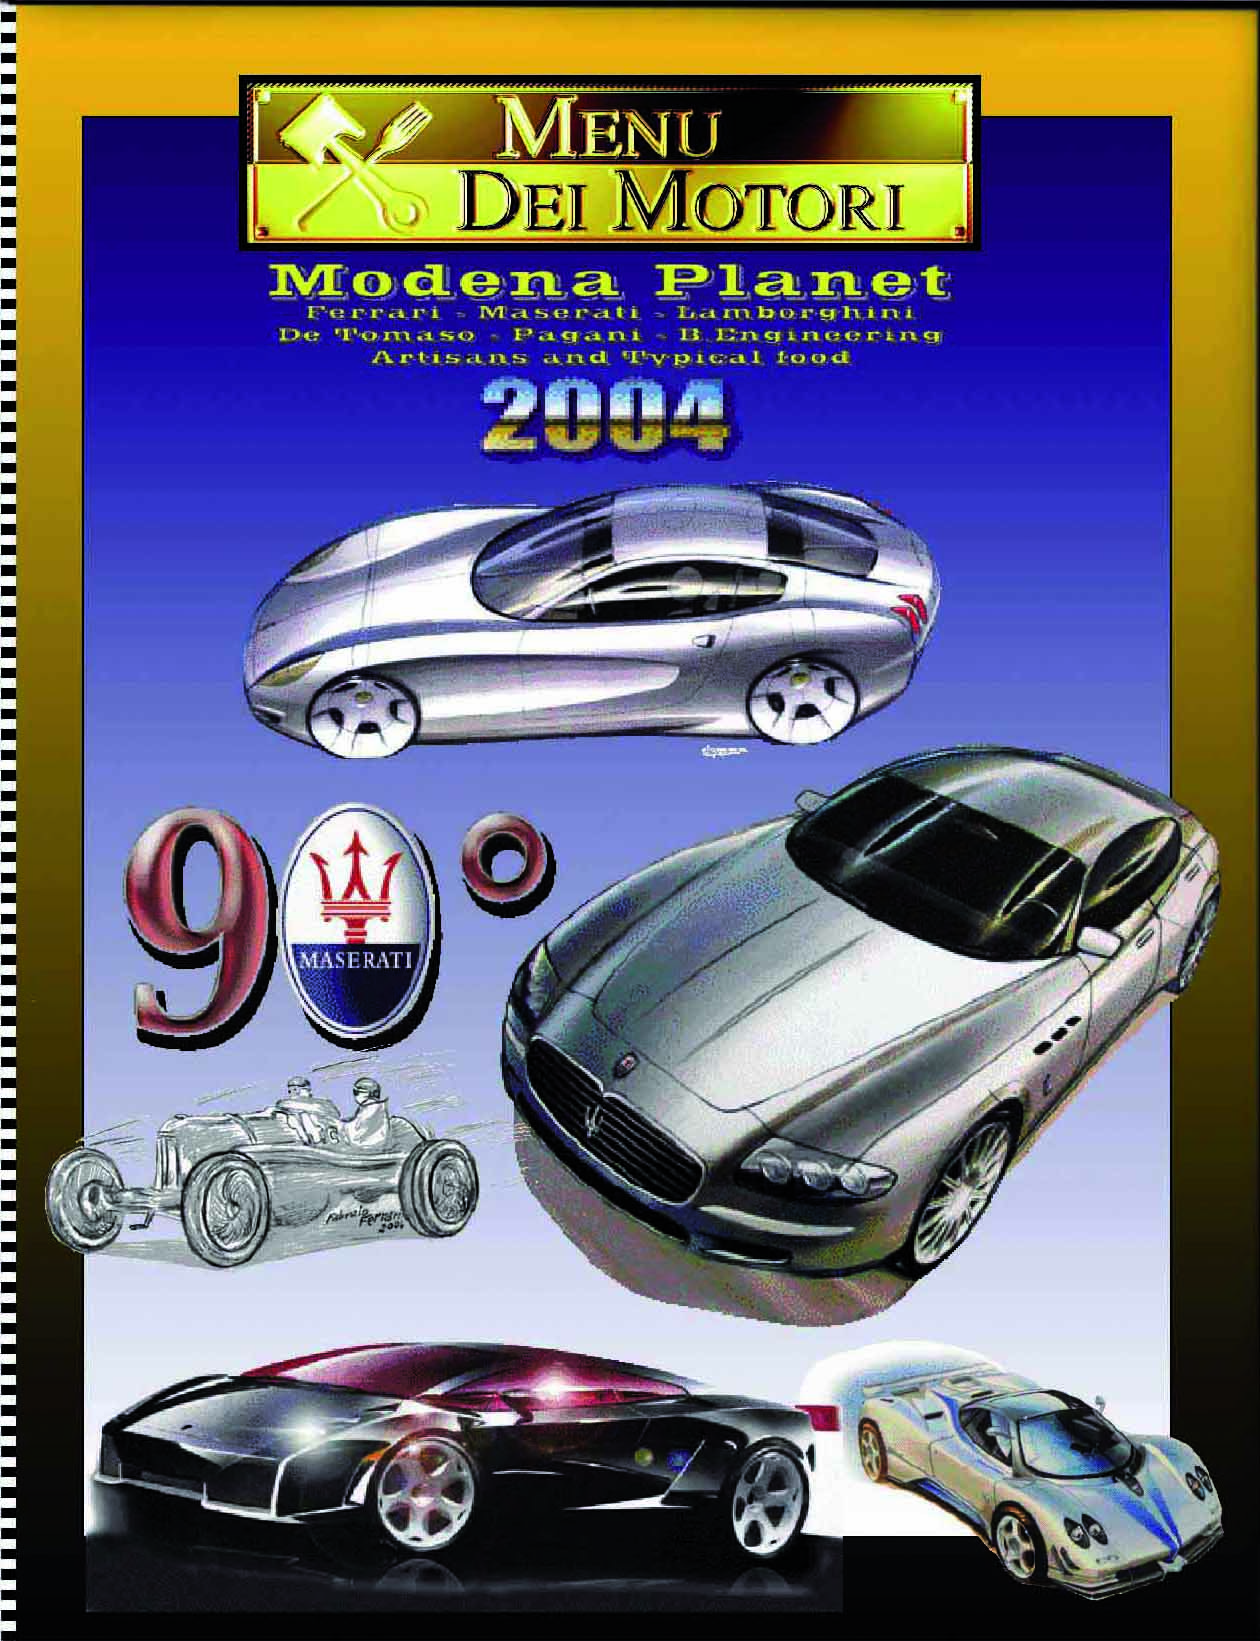 Photo of Menu dei Motori 2004: 90° Maserati! Ufficiale: Seminario e cena di gala!